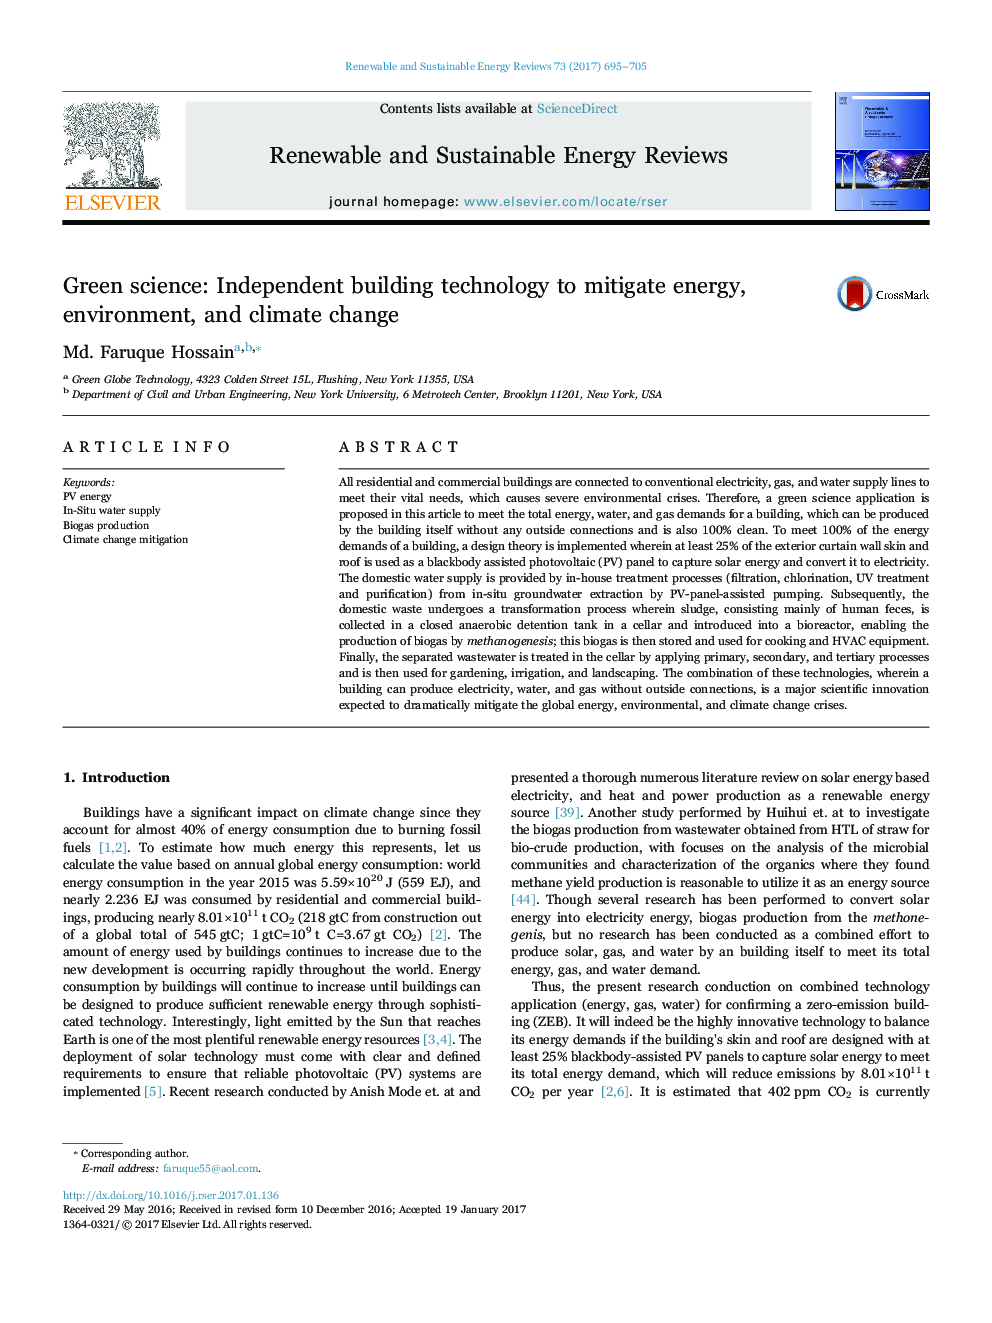 علم سبز: تکنولوژی مستقل ساختمانی برای کاهش انرژی، محیط زیست و تغییرات آب و هوایی 